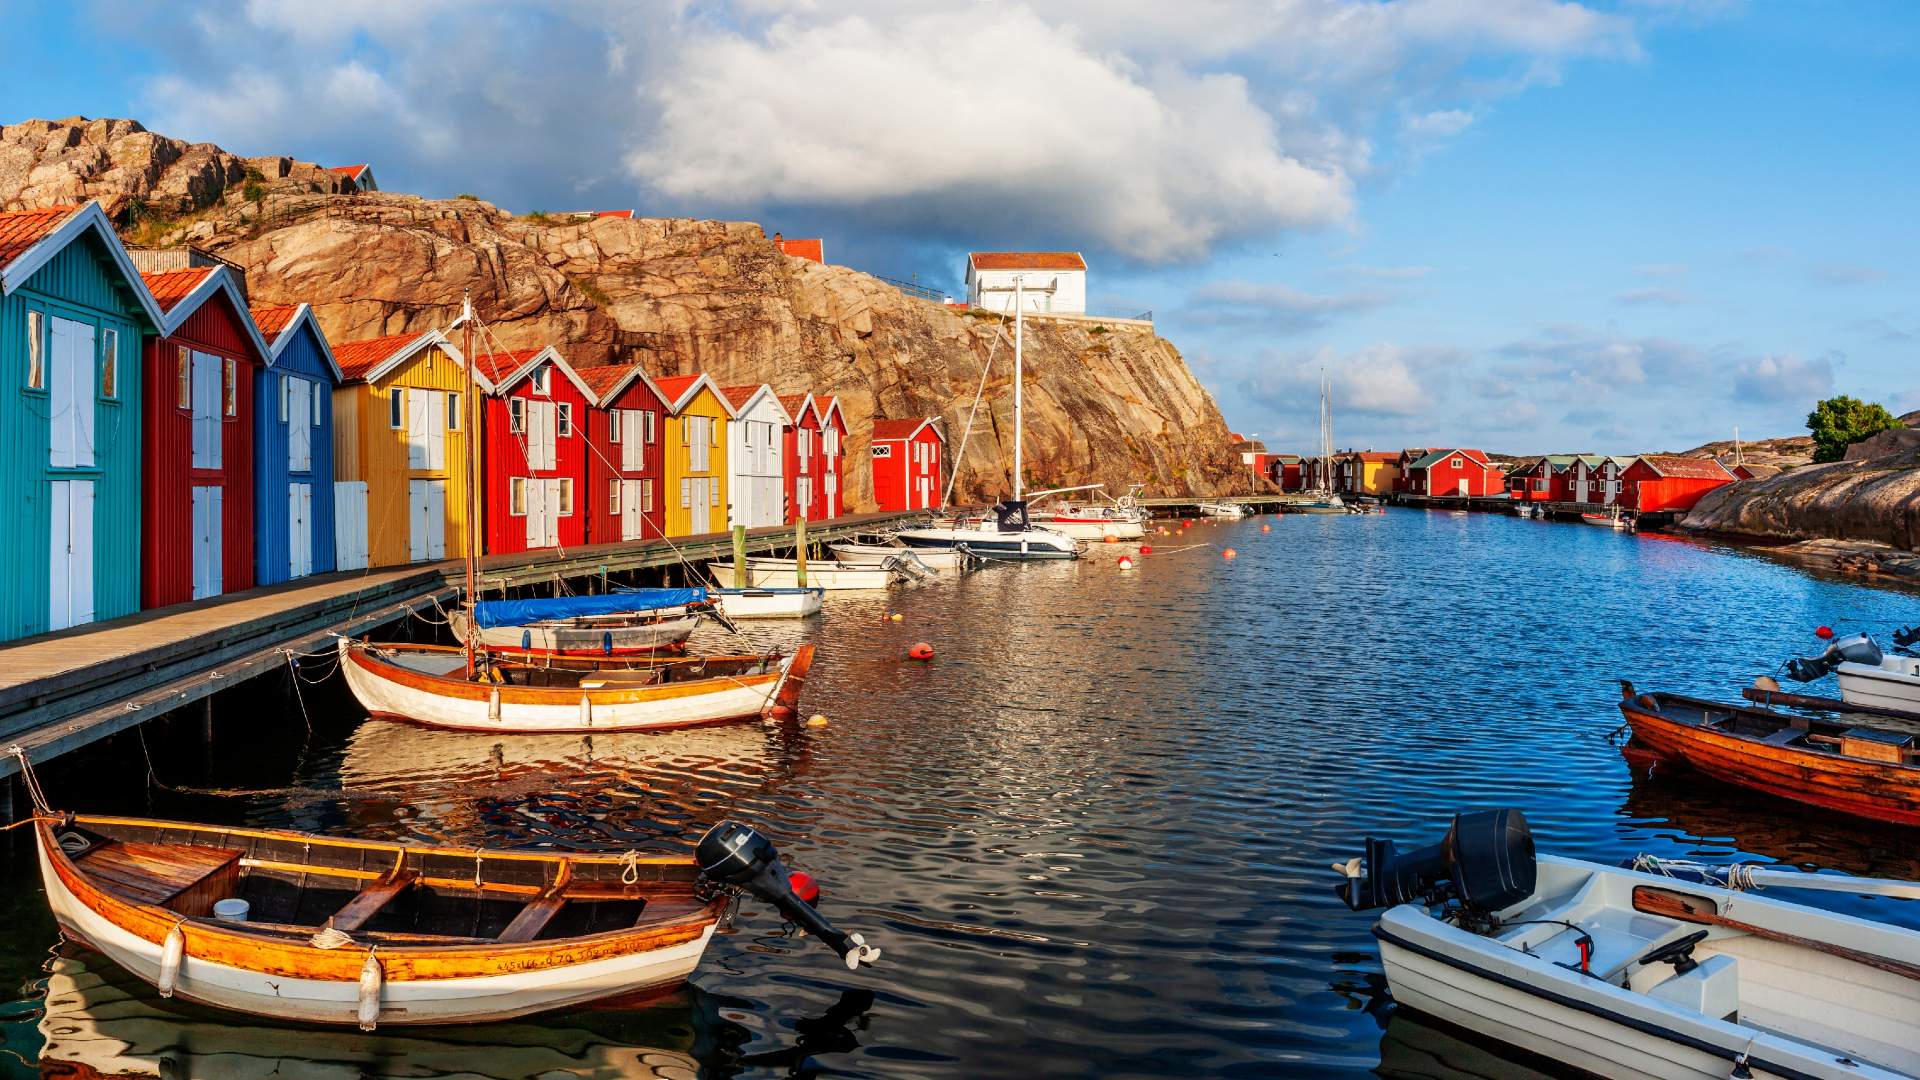 Colourful seaside village – Bootshäuschen, Sweden